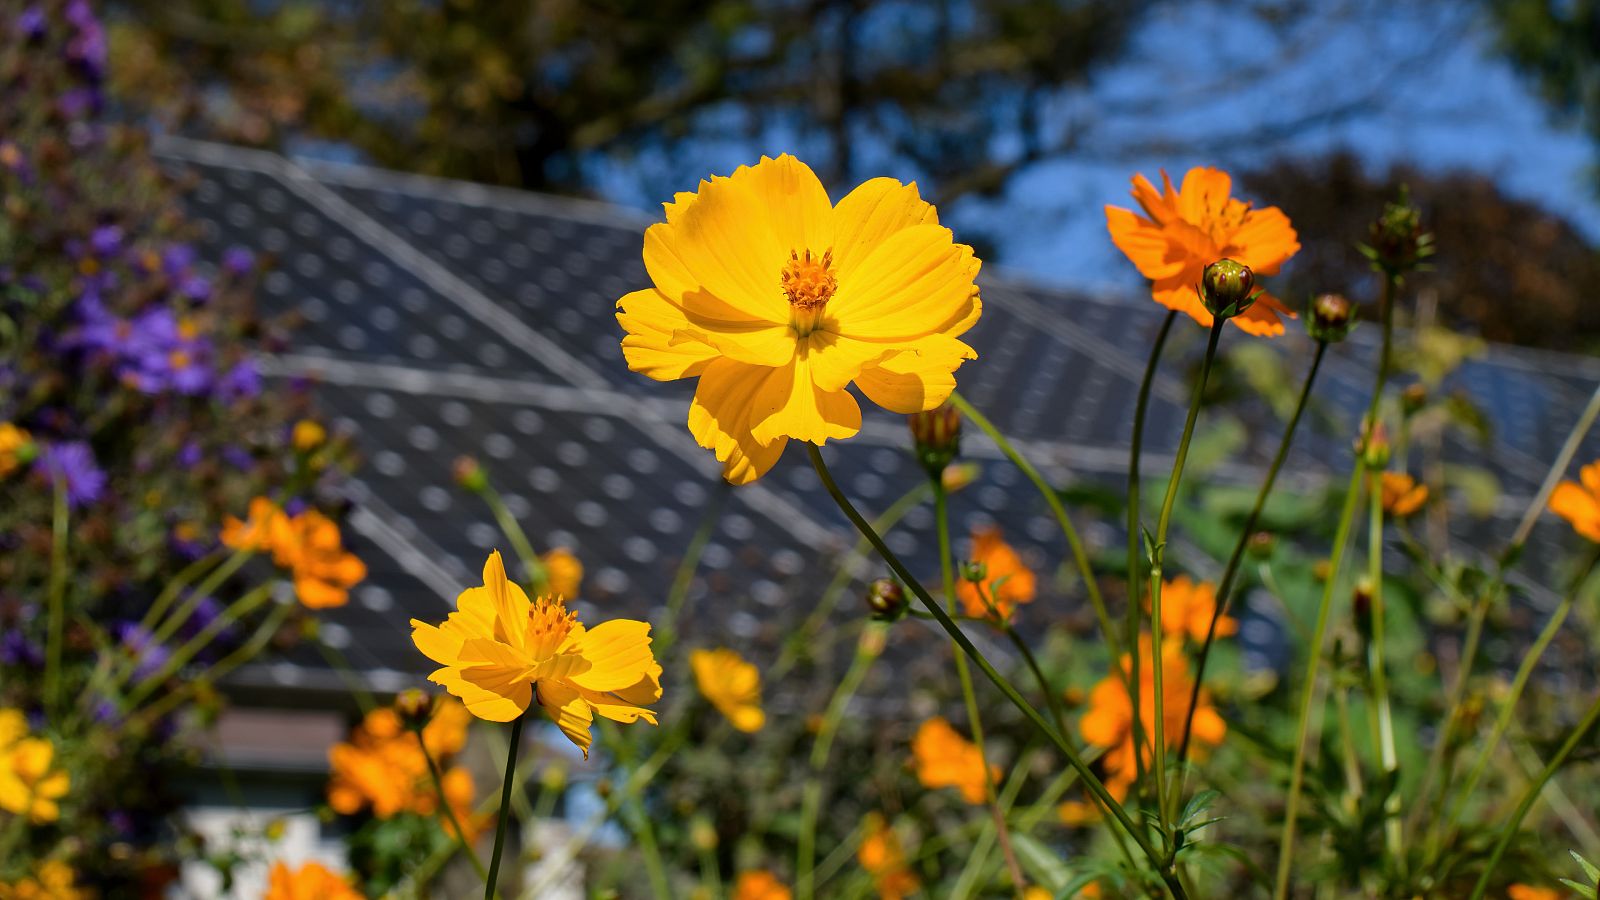 Apiario solar: un nuevo modelo agro voltaico